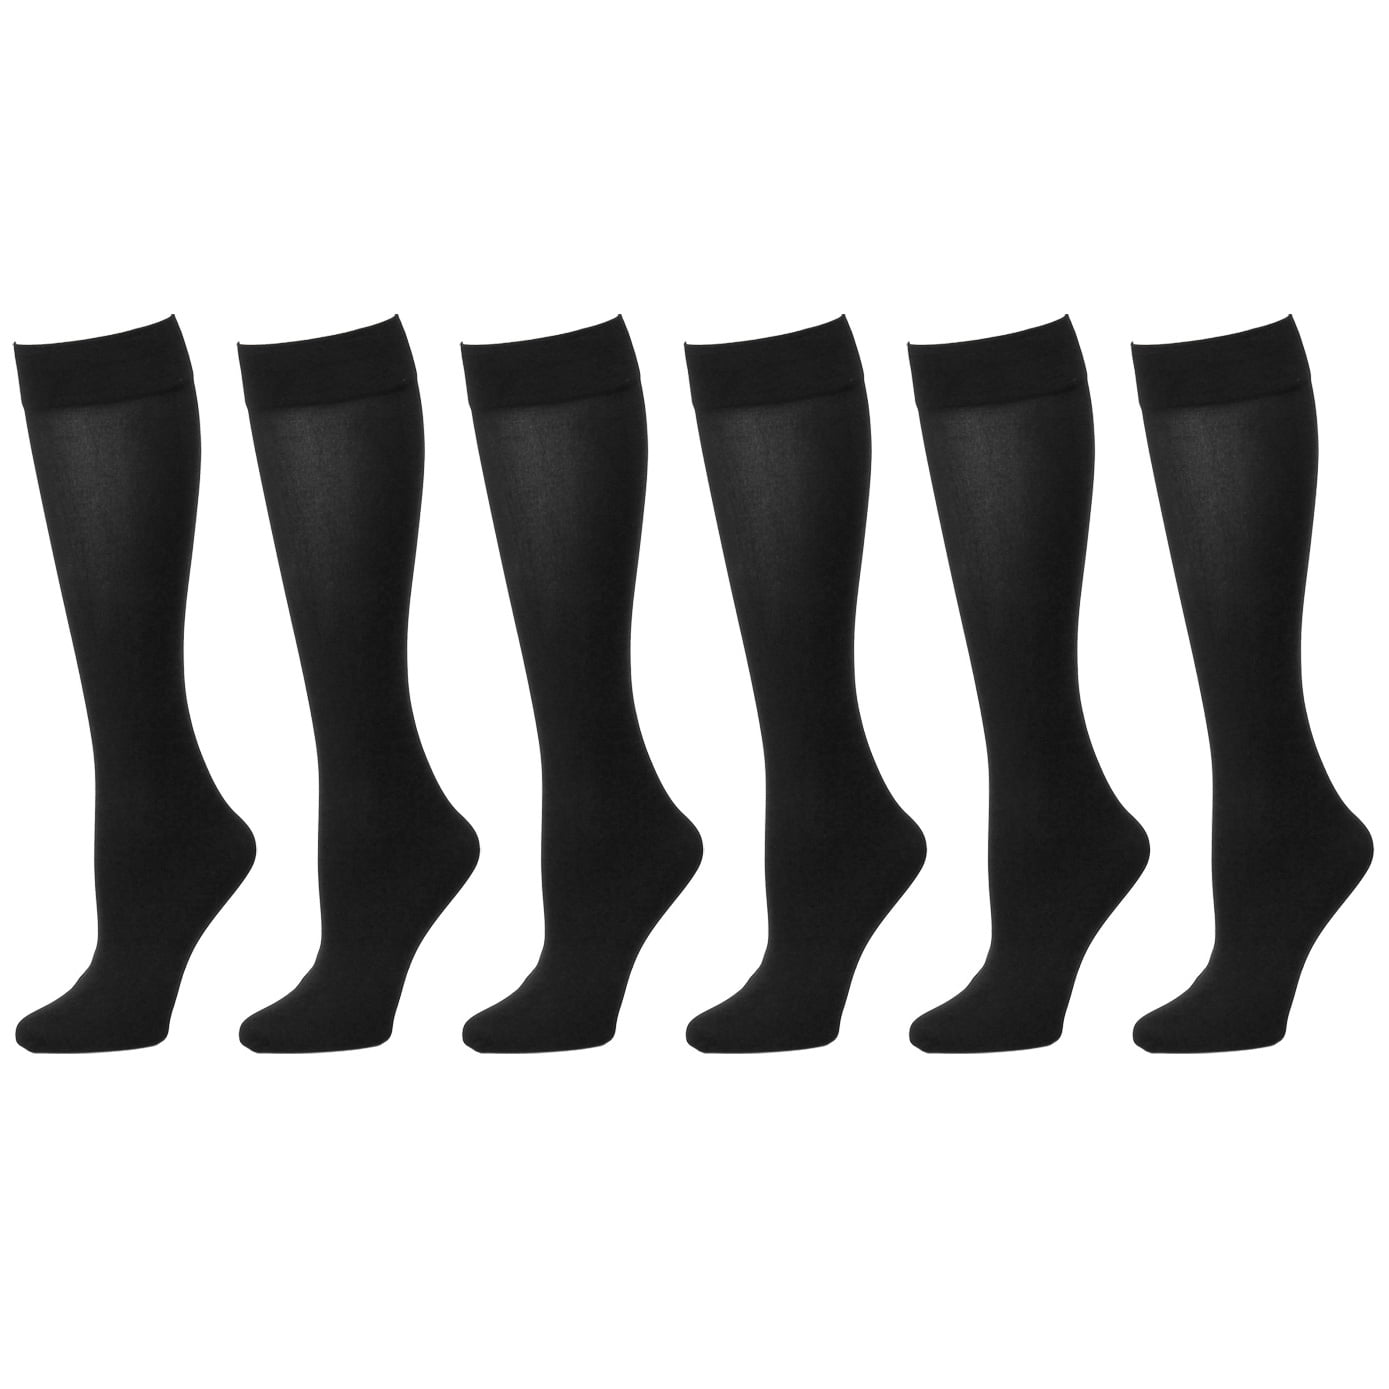 3~6 Pairs Women's hosiery 15 denier Stretchy Sheer Knee High Trouser Socks Lot 